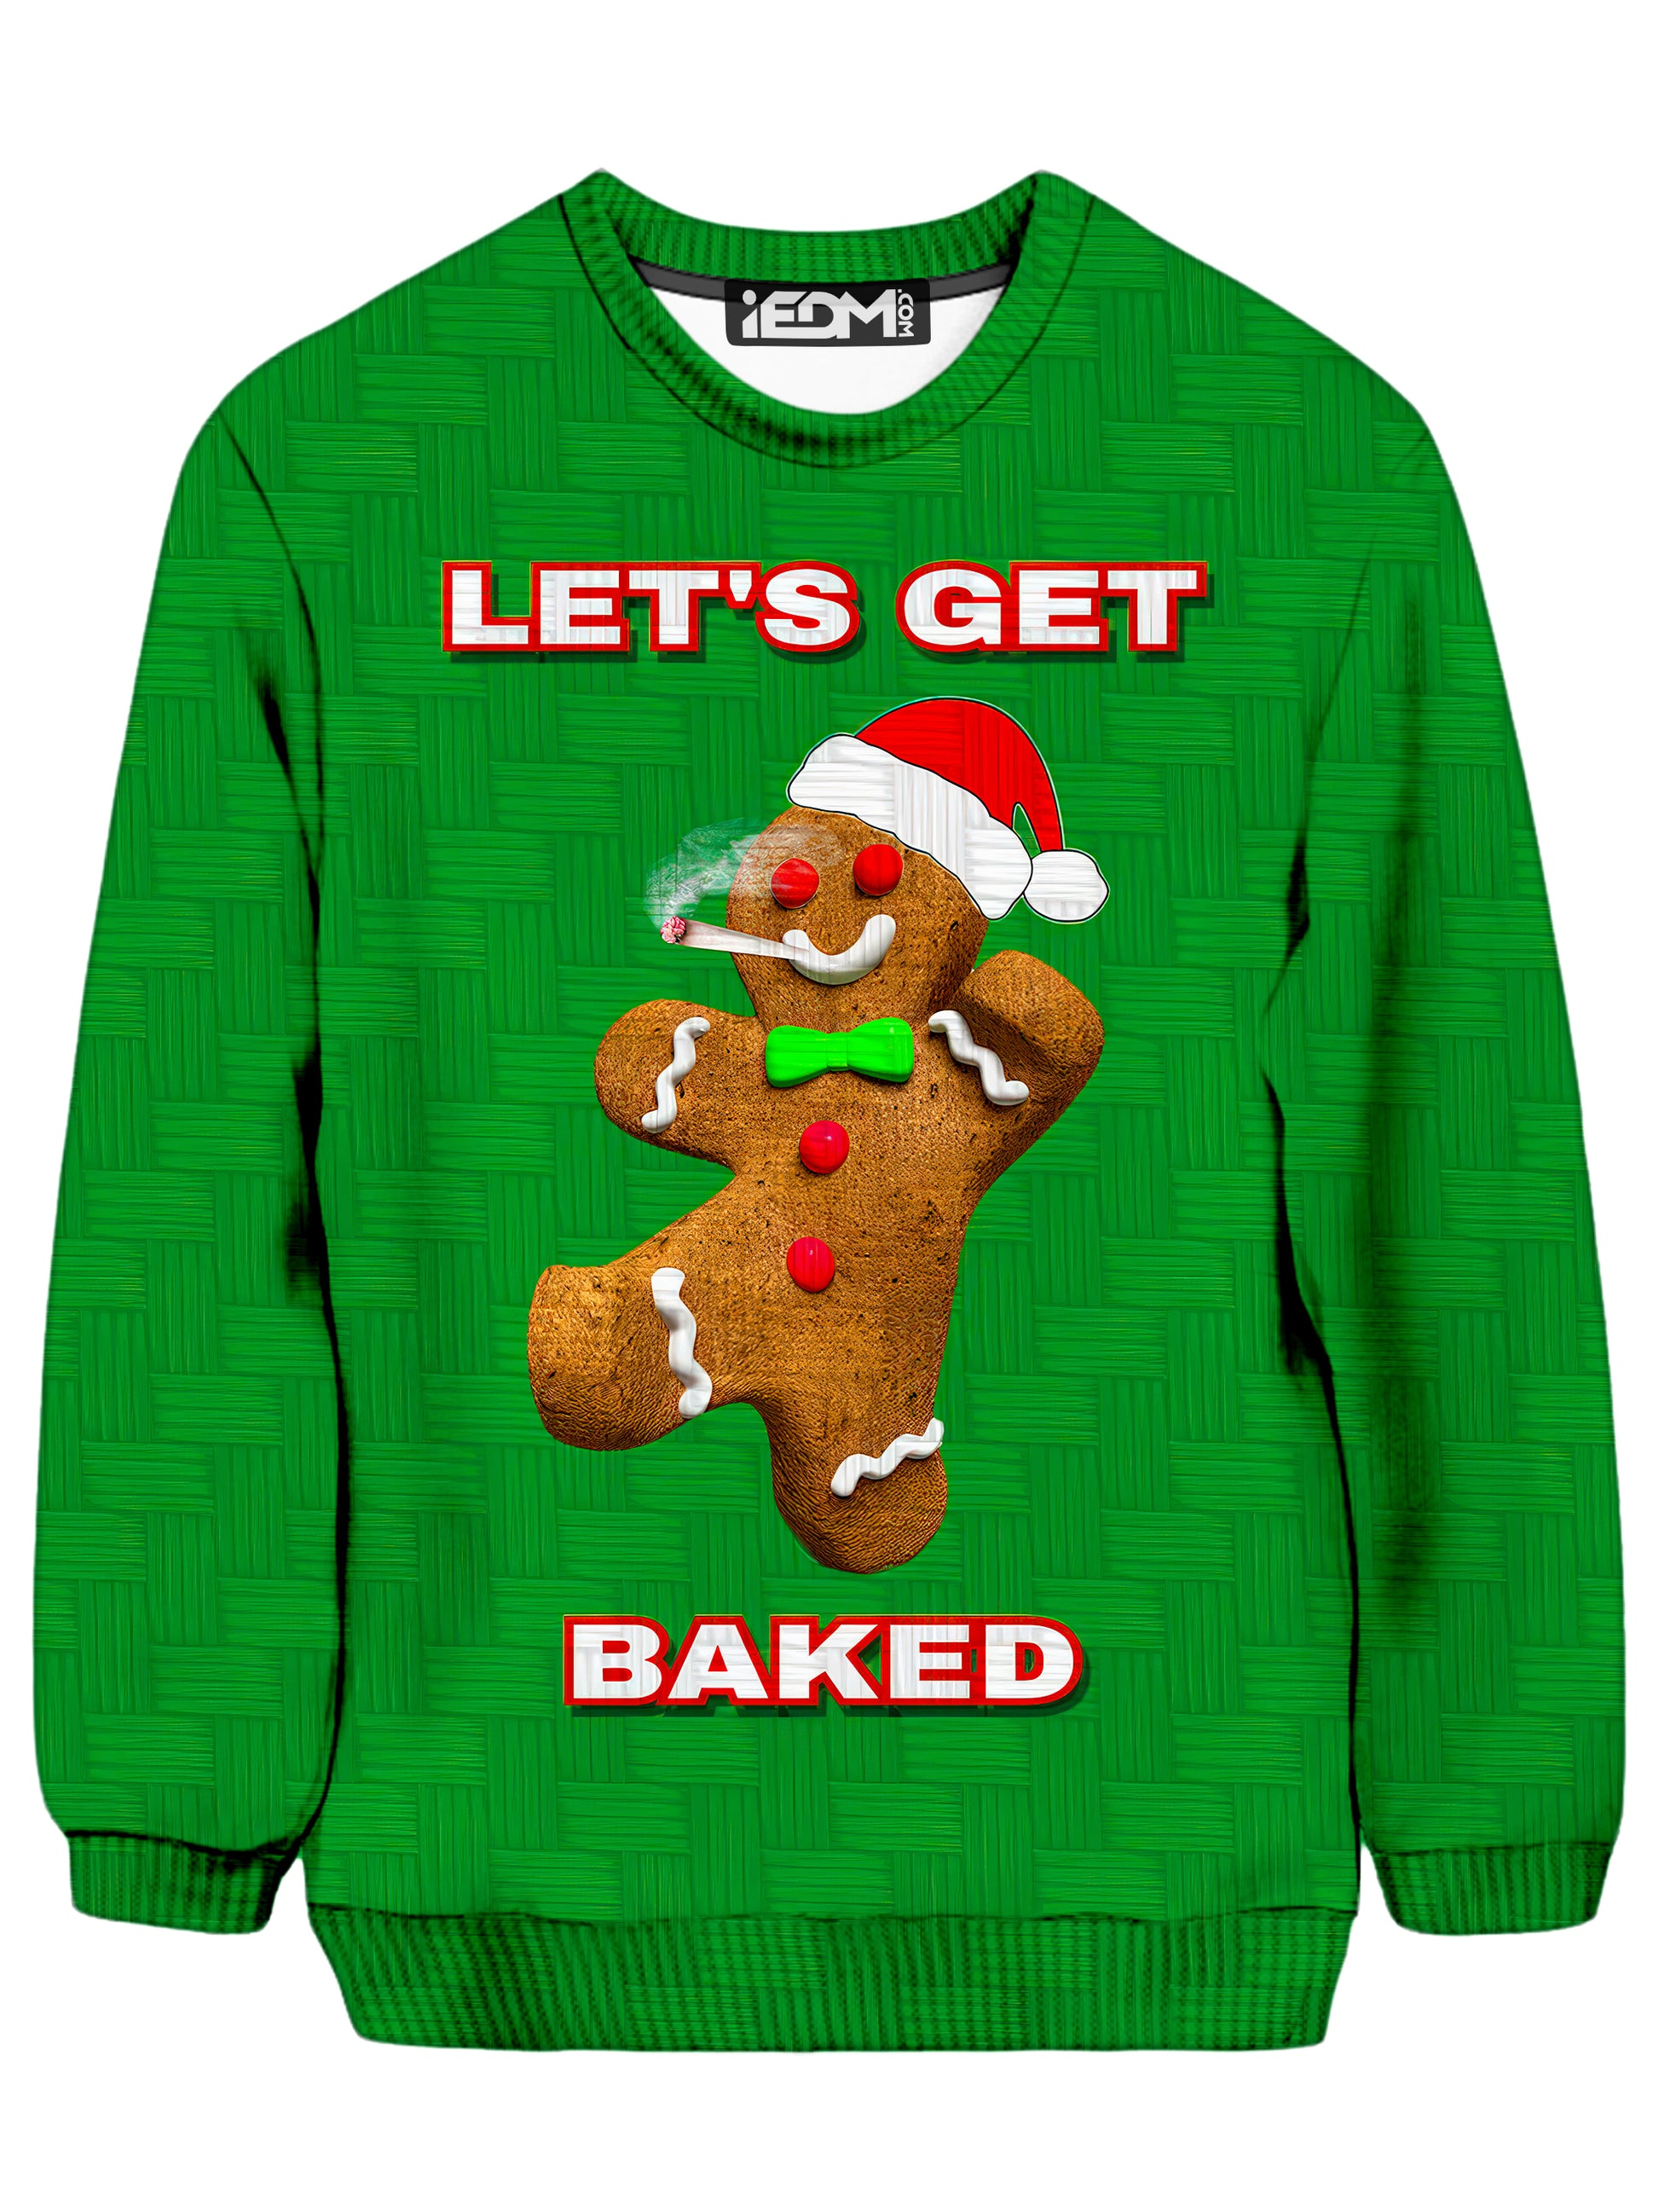 Lets Get Baked Sweatshirt, Big Tex Funkadelic, | iEDM